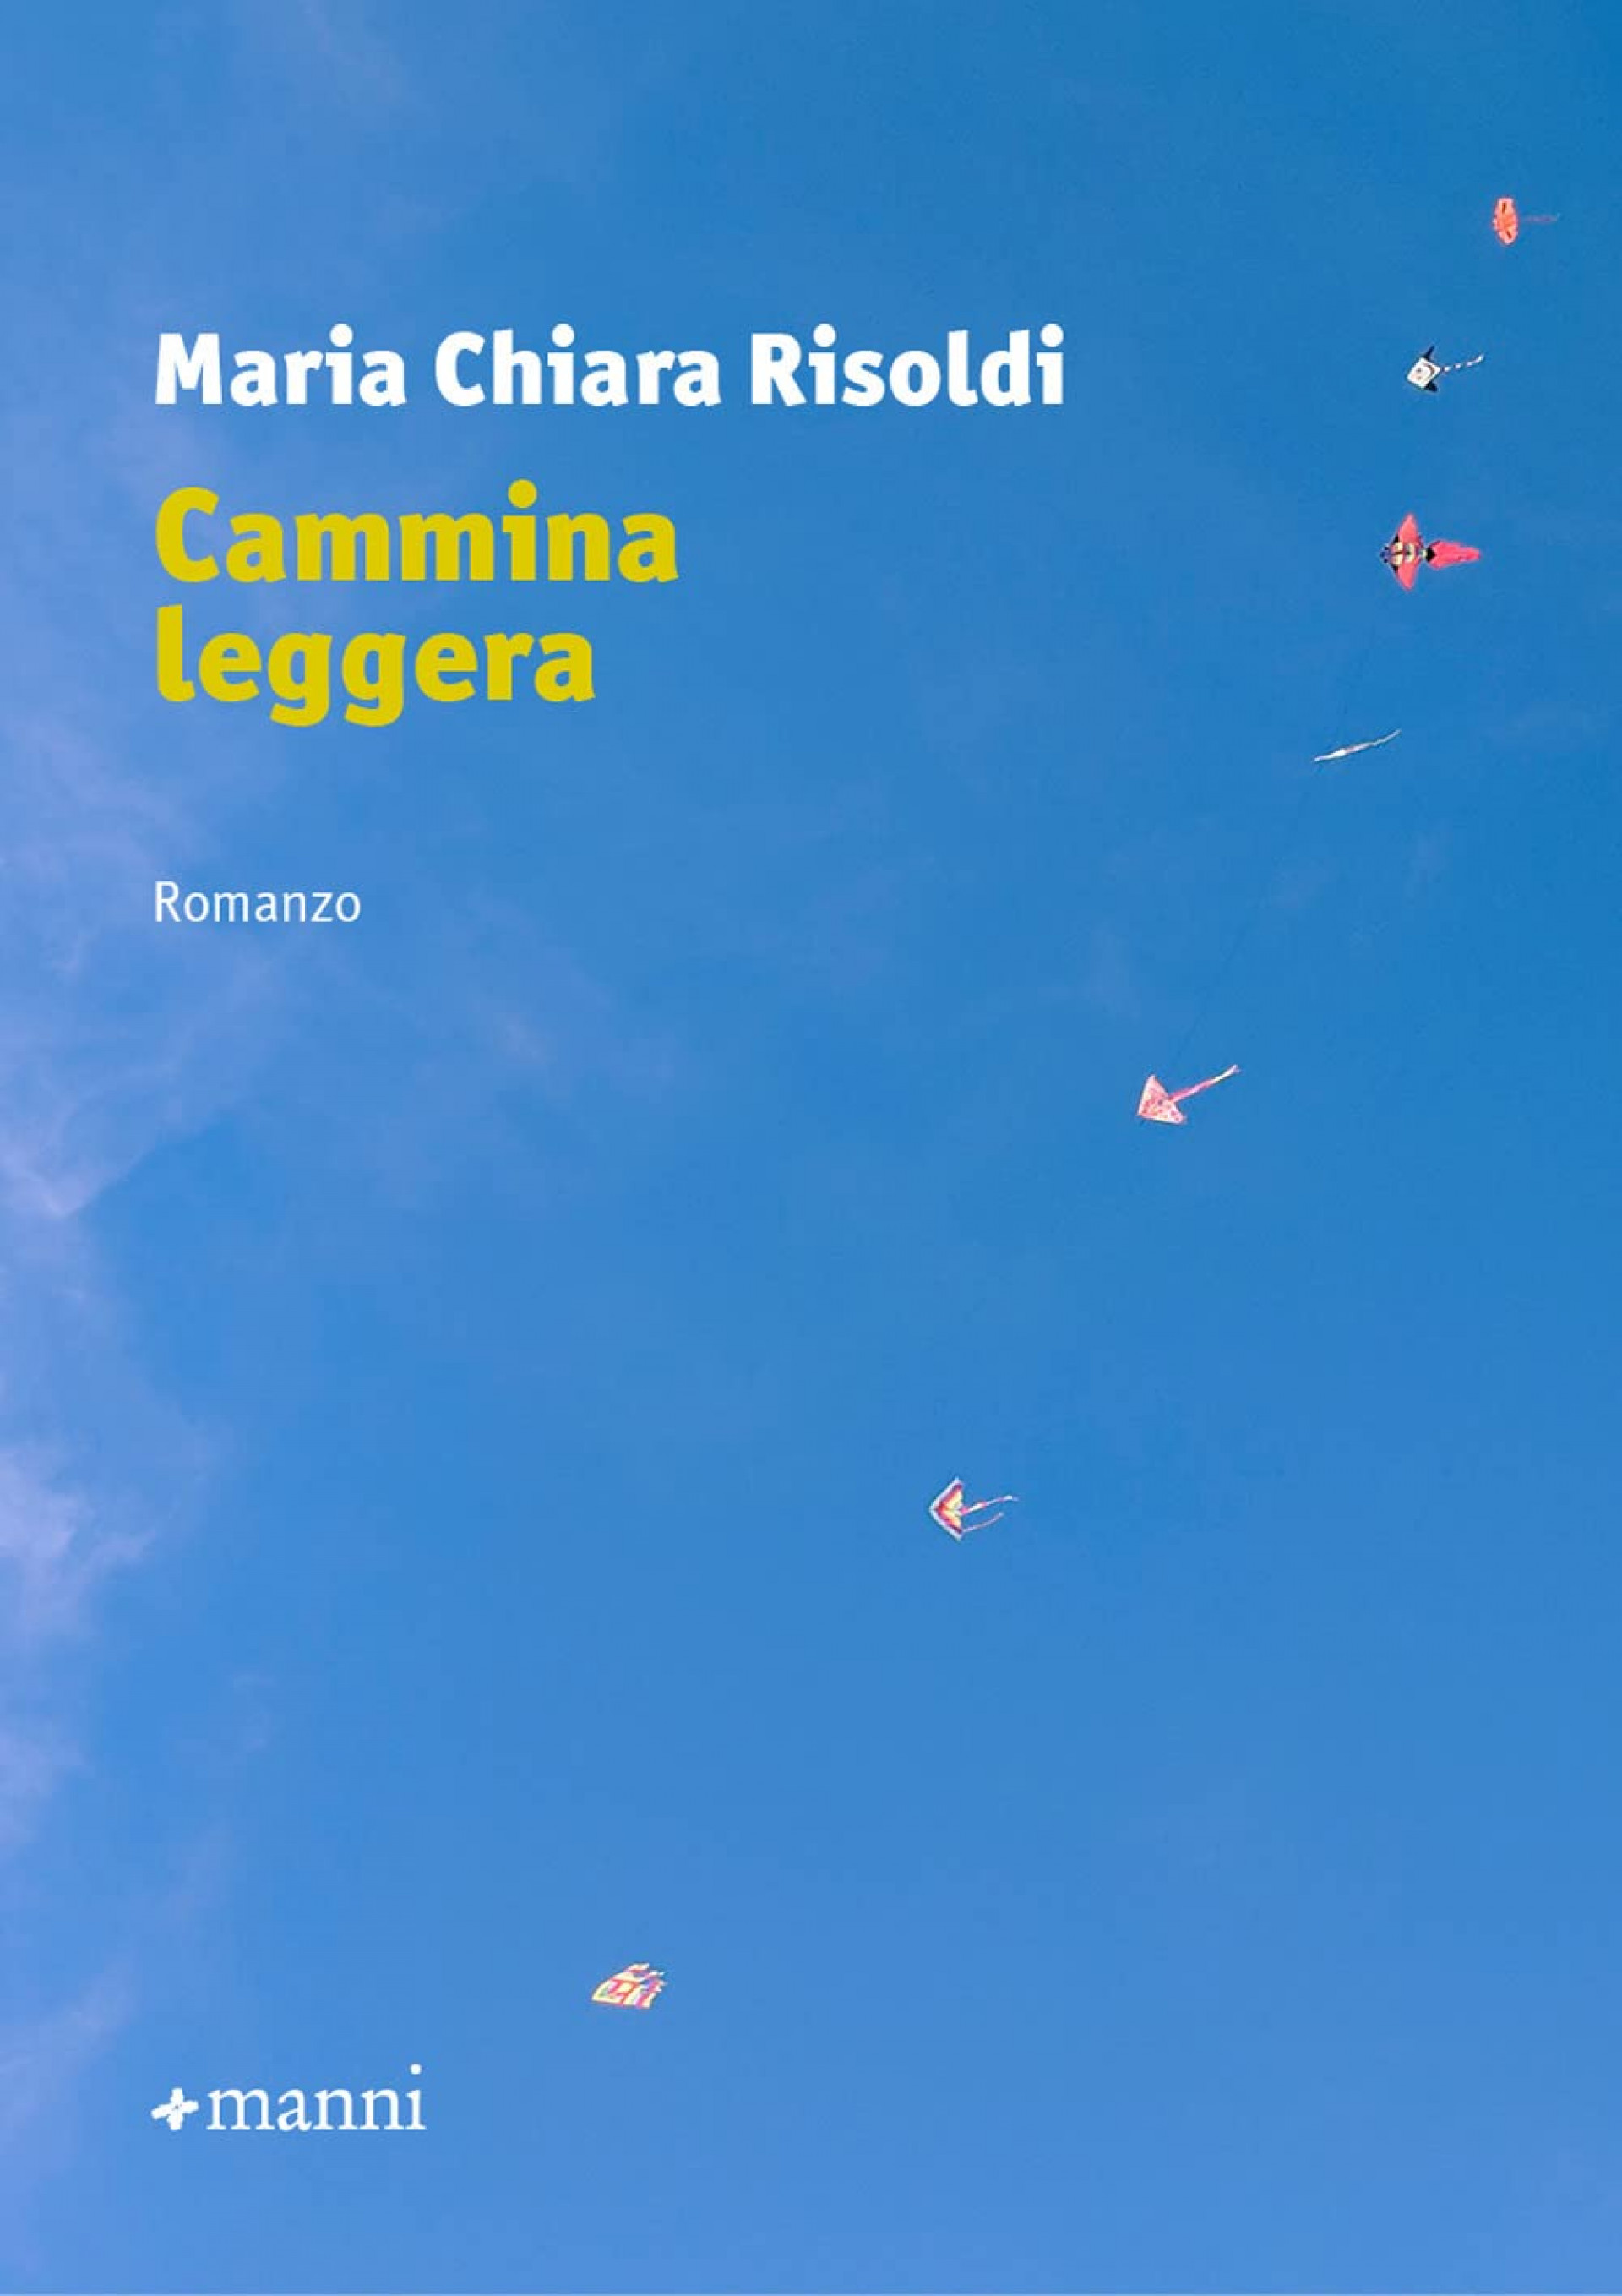 Cammina leggera, di Maria Chiara Risoldi (Manni editore) - Premio Gherardo Amadei 2022.